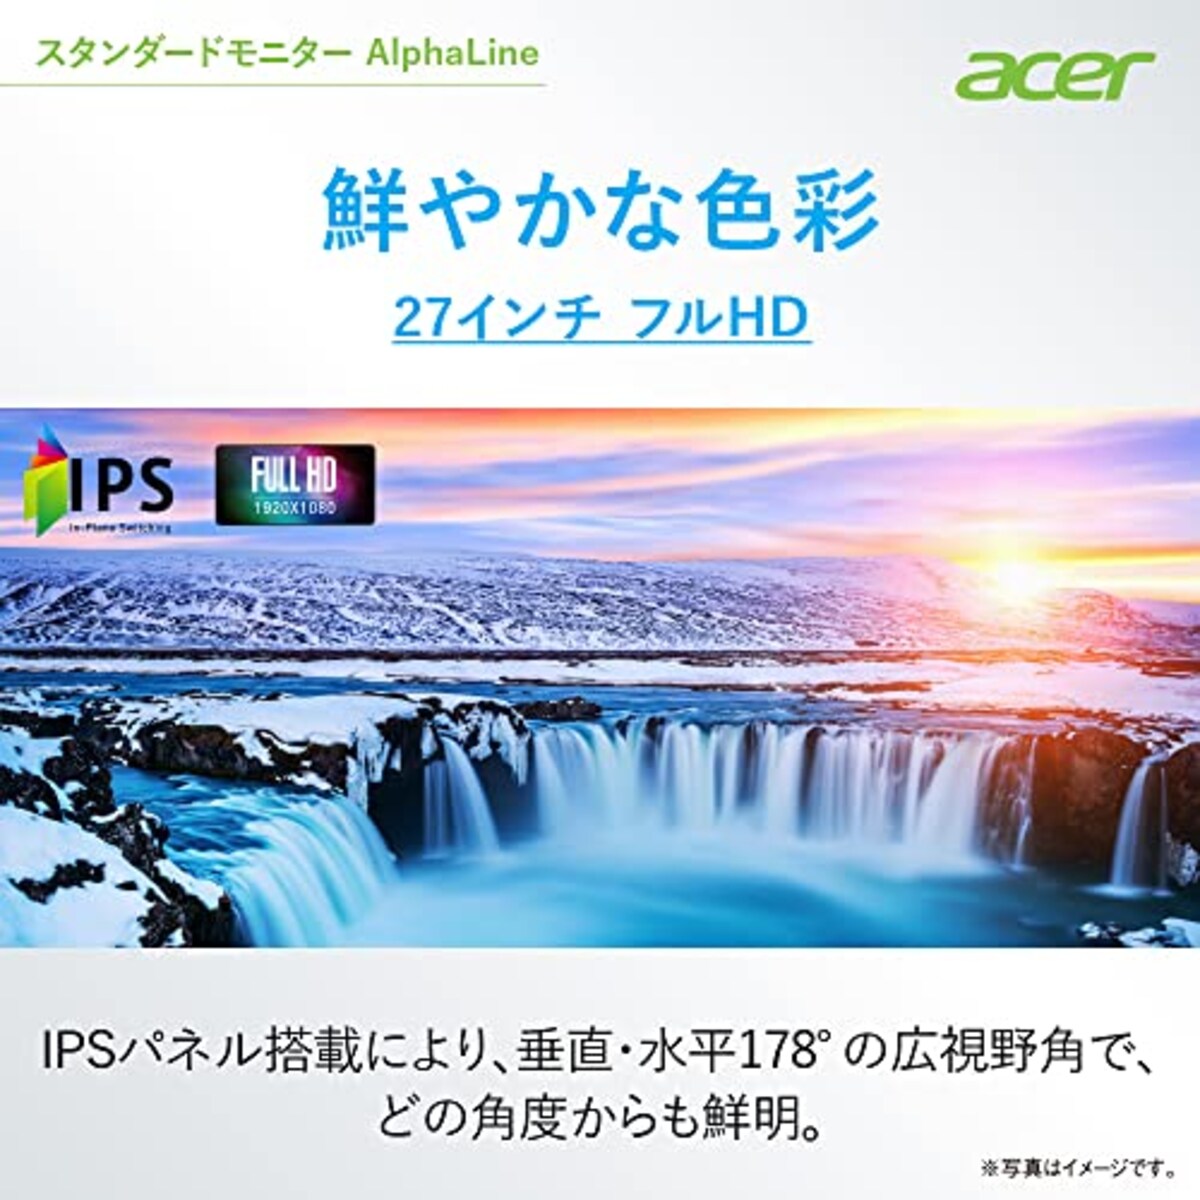  日本エイサー 【Amazon.co.jp限定】 Acer スタンダードモニター 27インチ IPS 非光沢 フルHD 100Hz 1ms HDMI ミニD-Sub15 VESAマウント対応 スピーカー内蔵 ヘッドホン端子 AMD FreeSync SA272Ebmix画像2 